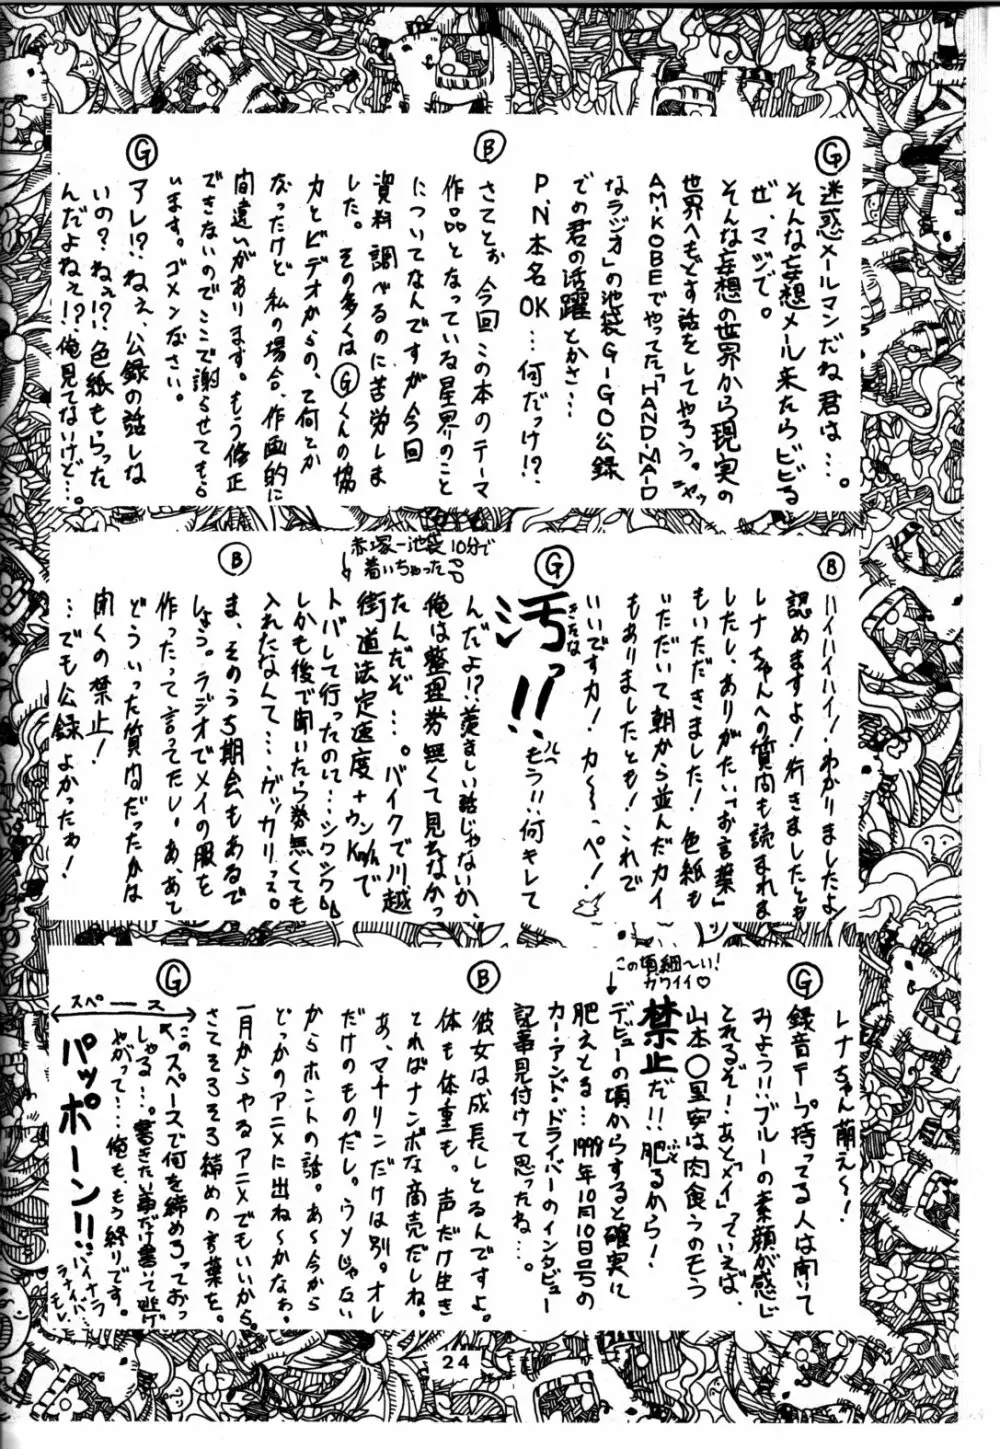 追放覚悟 Ver 4.0 - page24